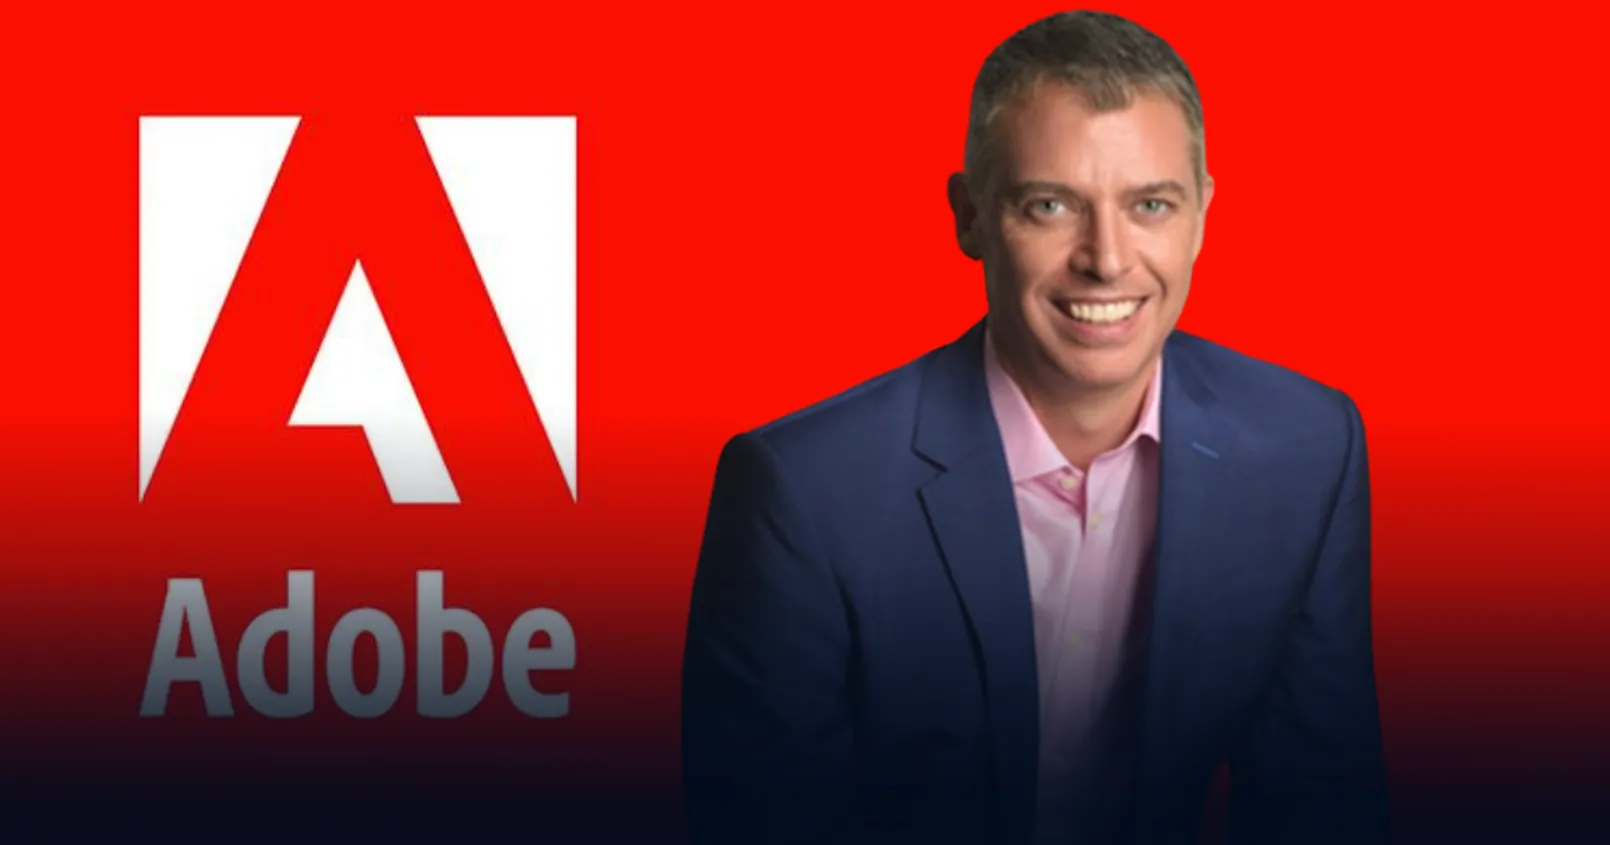 Adobe ประกาศเปิดสำนักงานที่ประเทศไทย